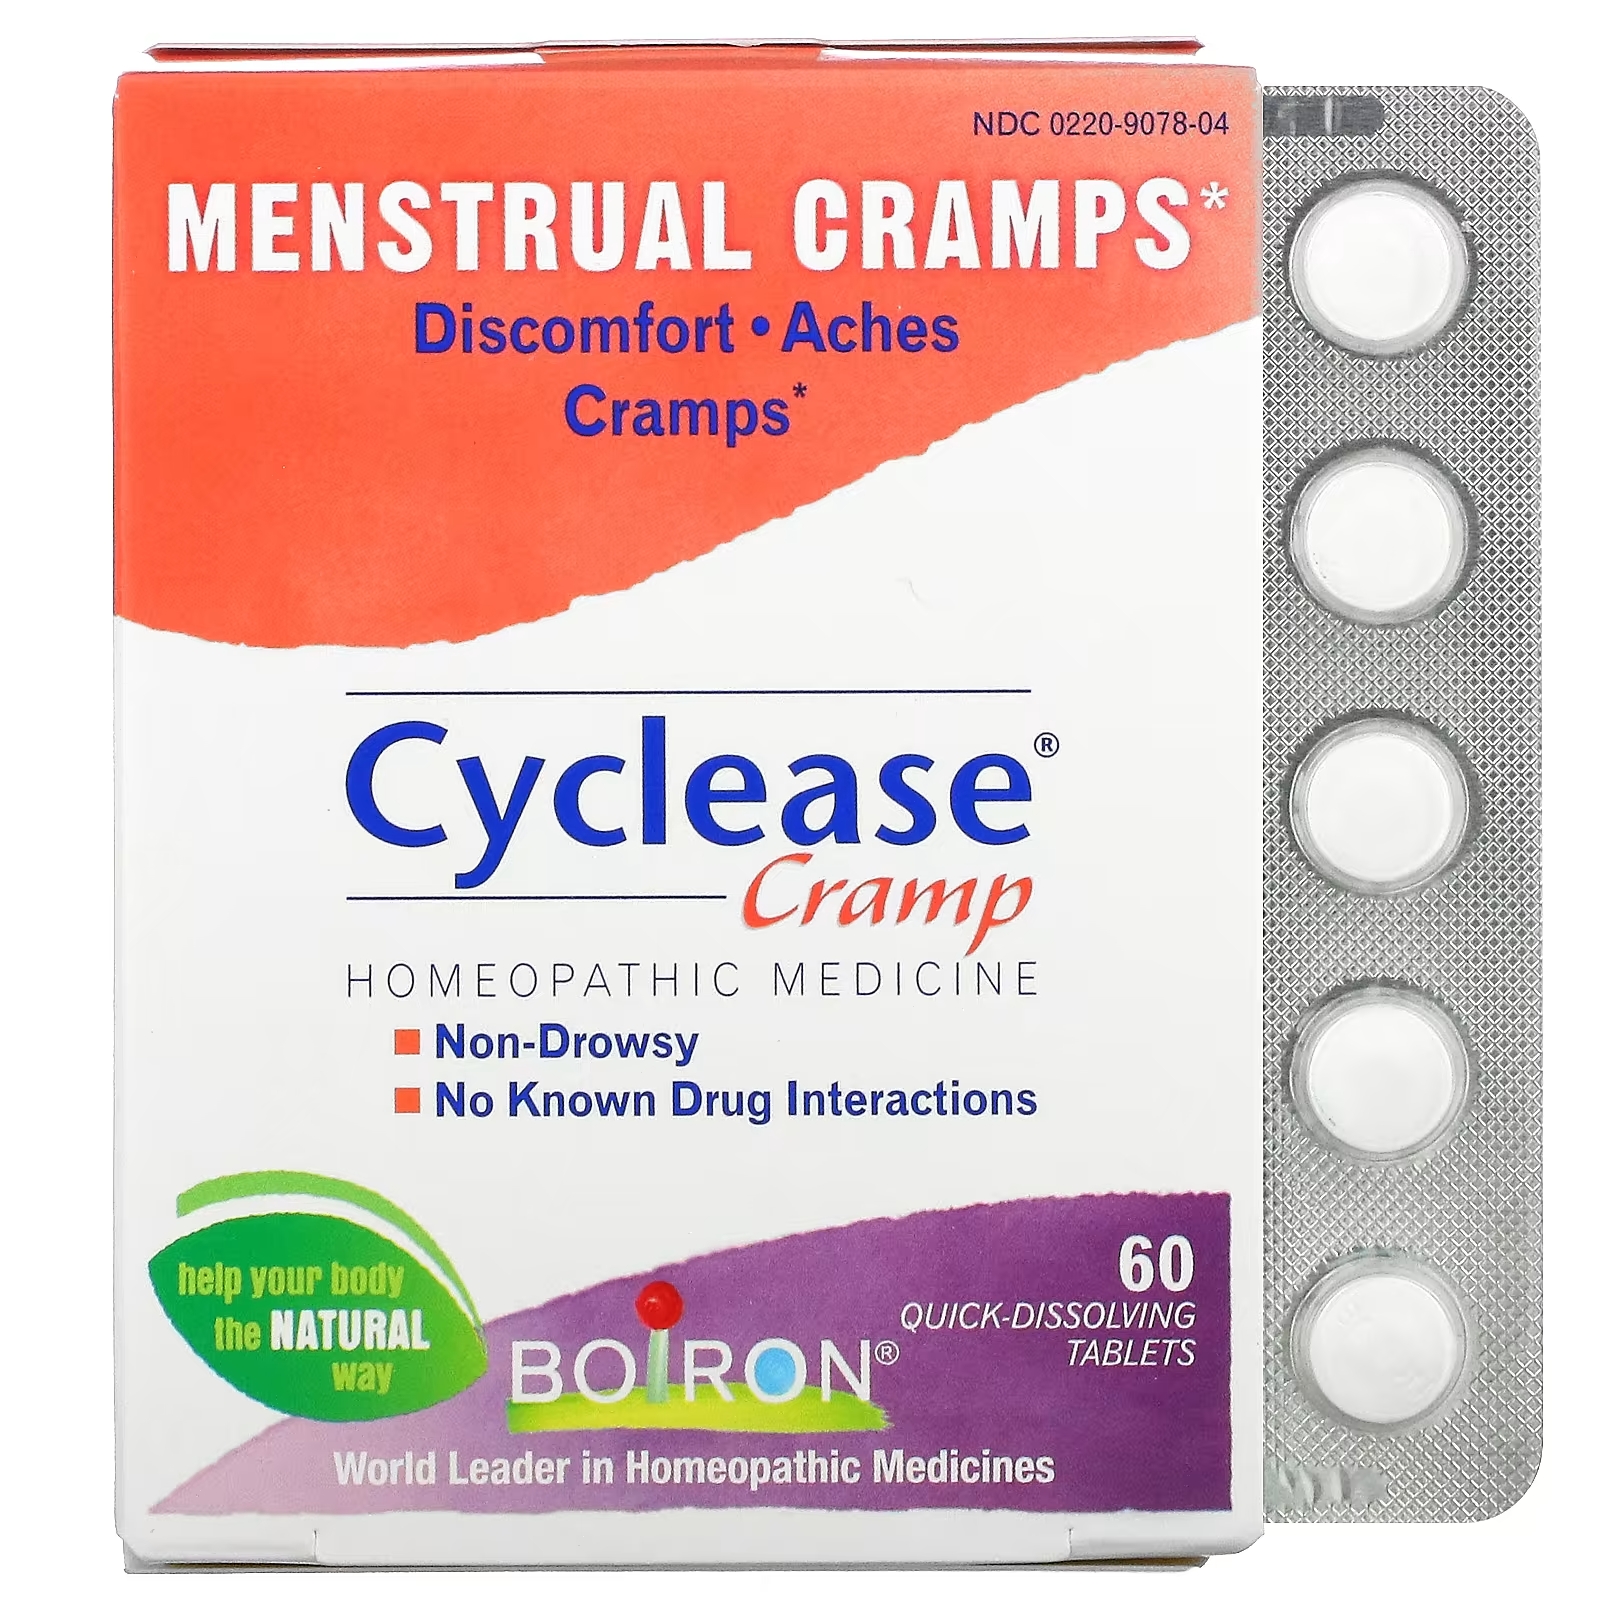 Boiron Cyclease Cramp менструальные спазмы, 60 быстрорастворимых таблеток цена и фото